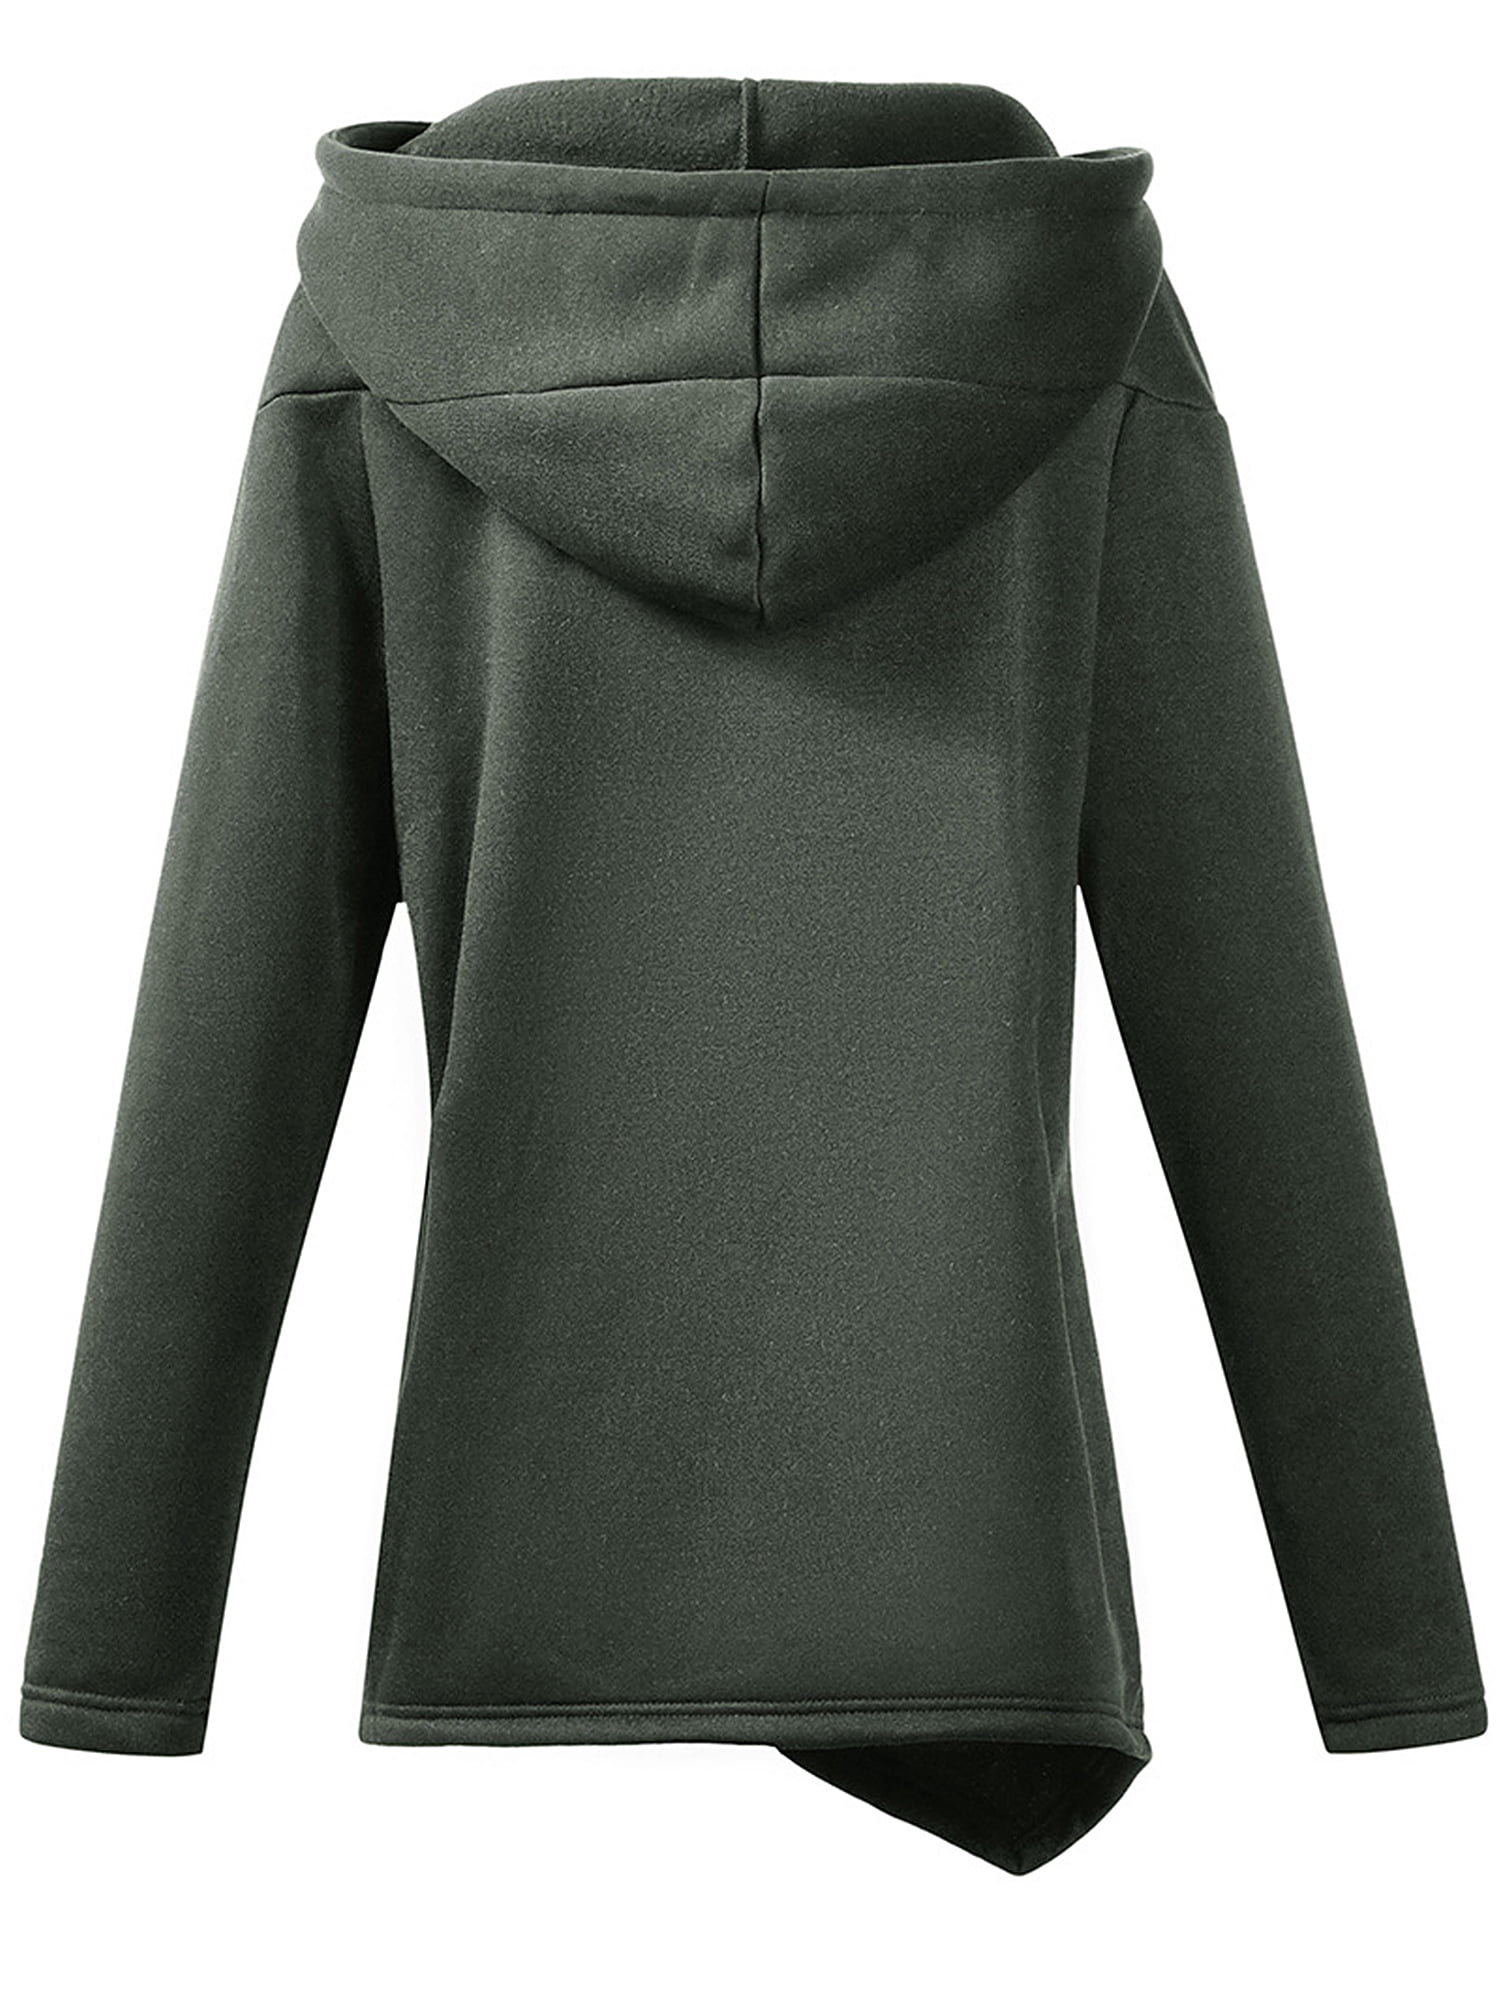 kolila Hoodies for Women Fleece Asymmetrical Button Hem Plus Size Top Sweater Blouse Pullover Hoodie Overcoat Outwear 